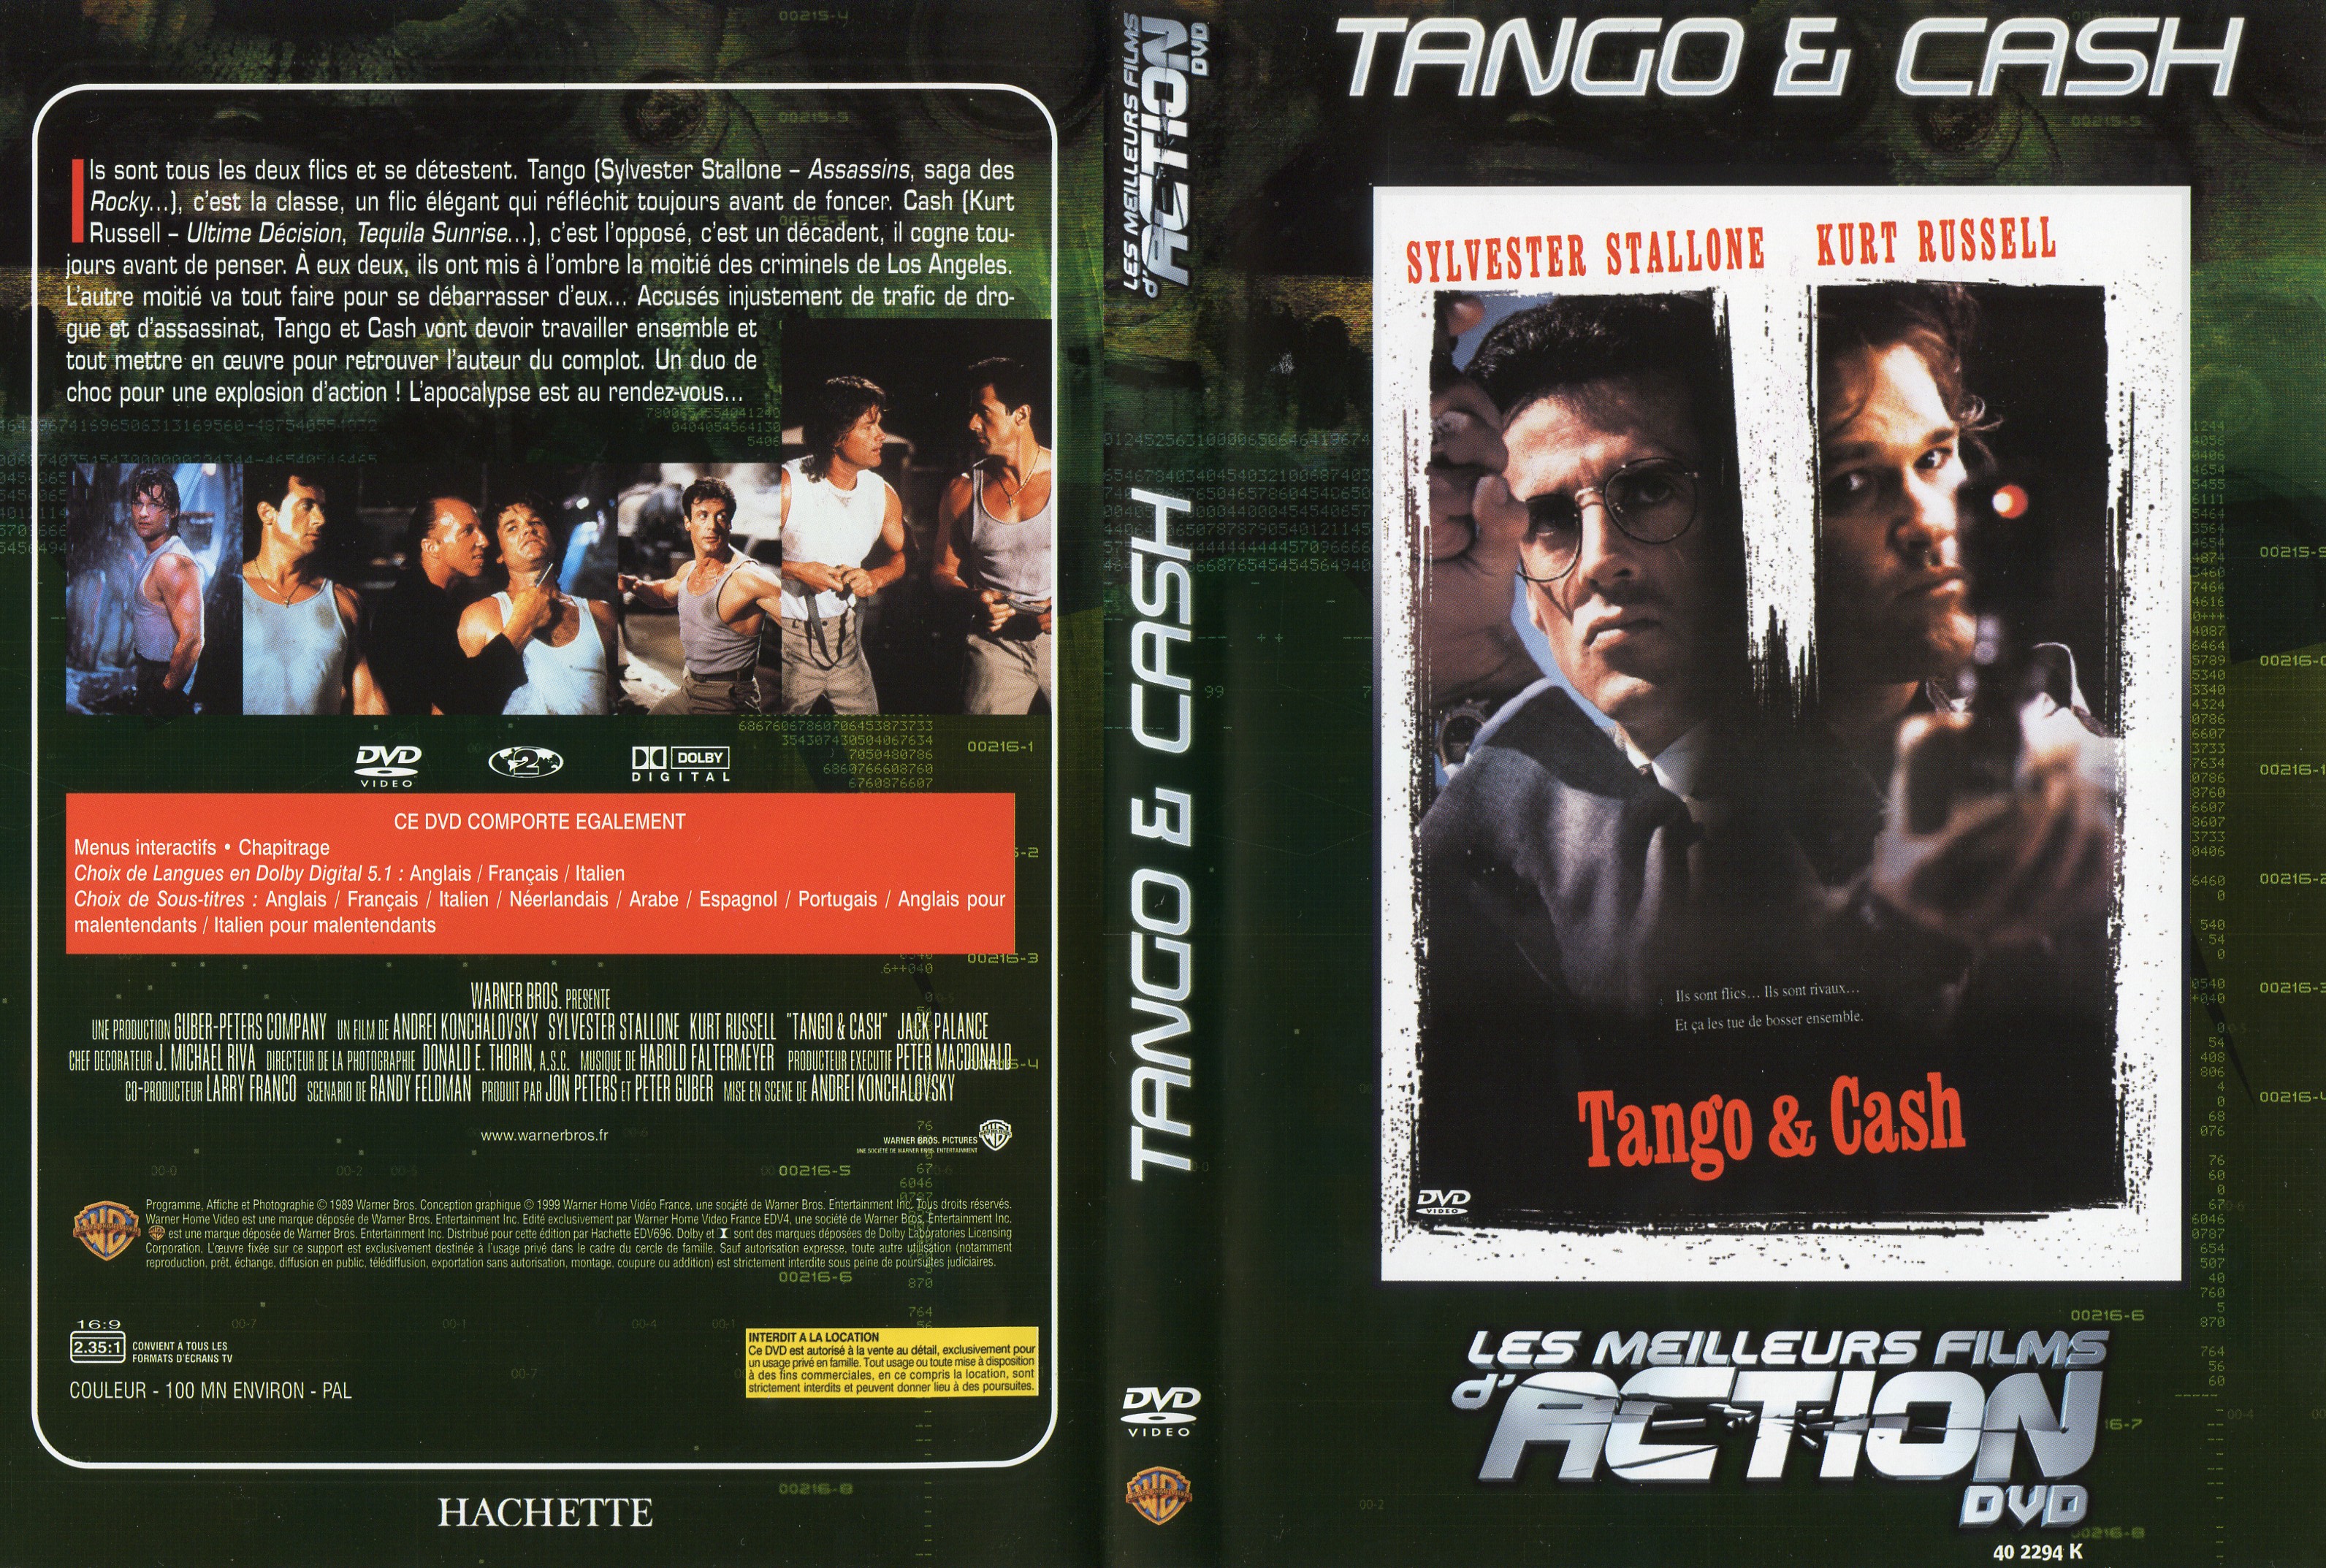 Jaquette DVD Tango et Cash v2